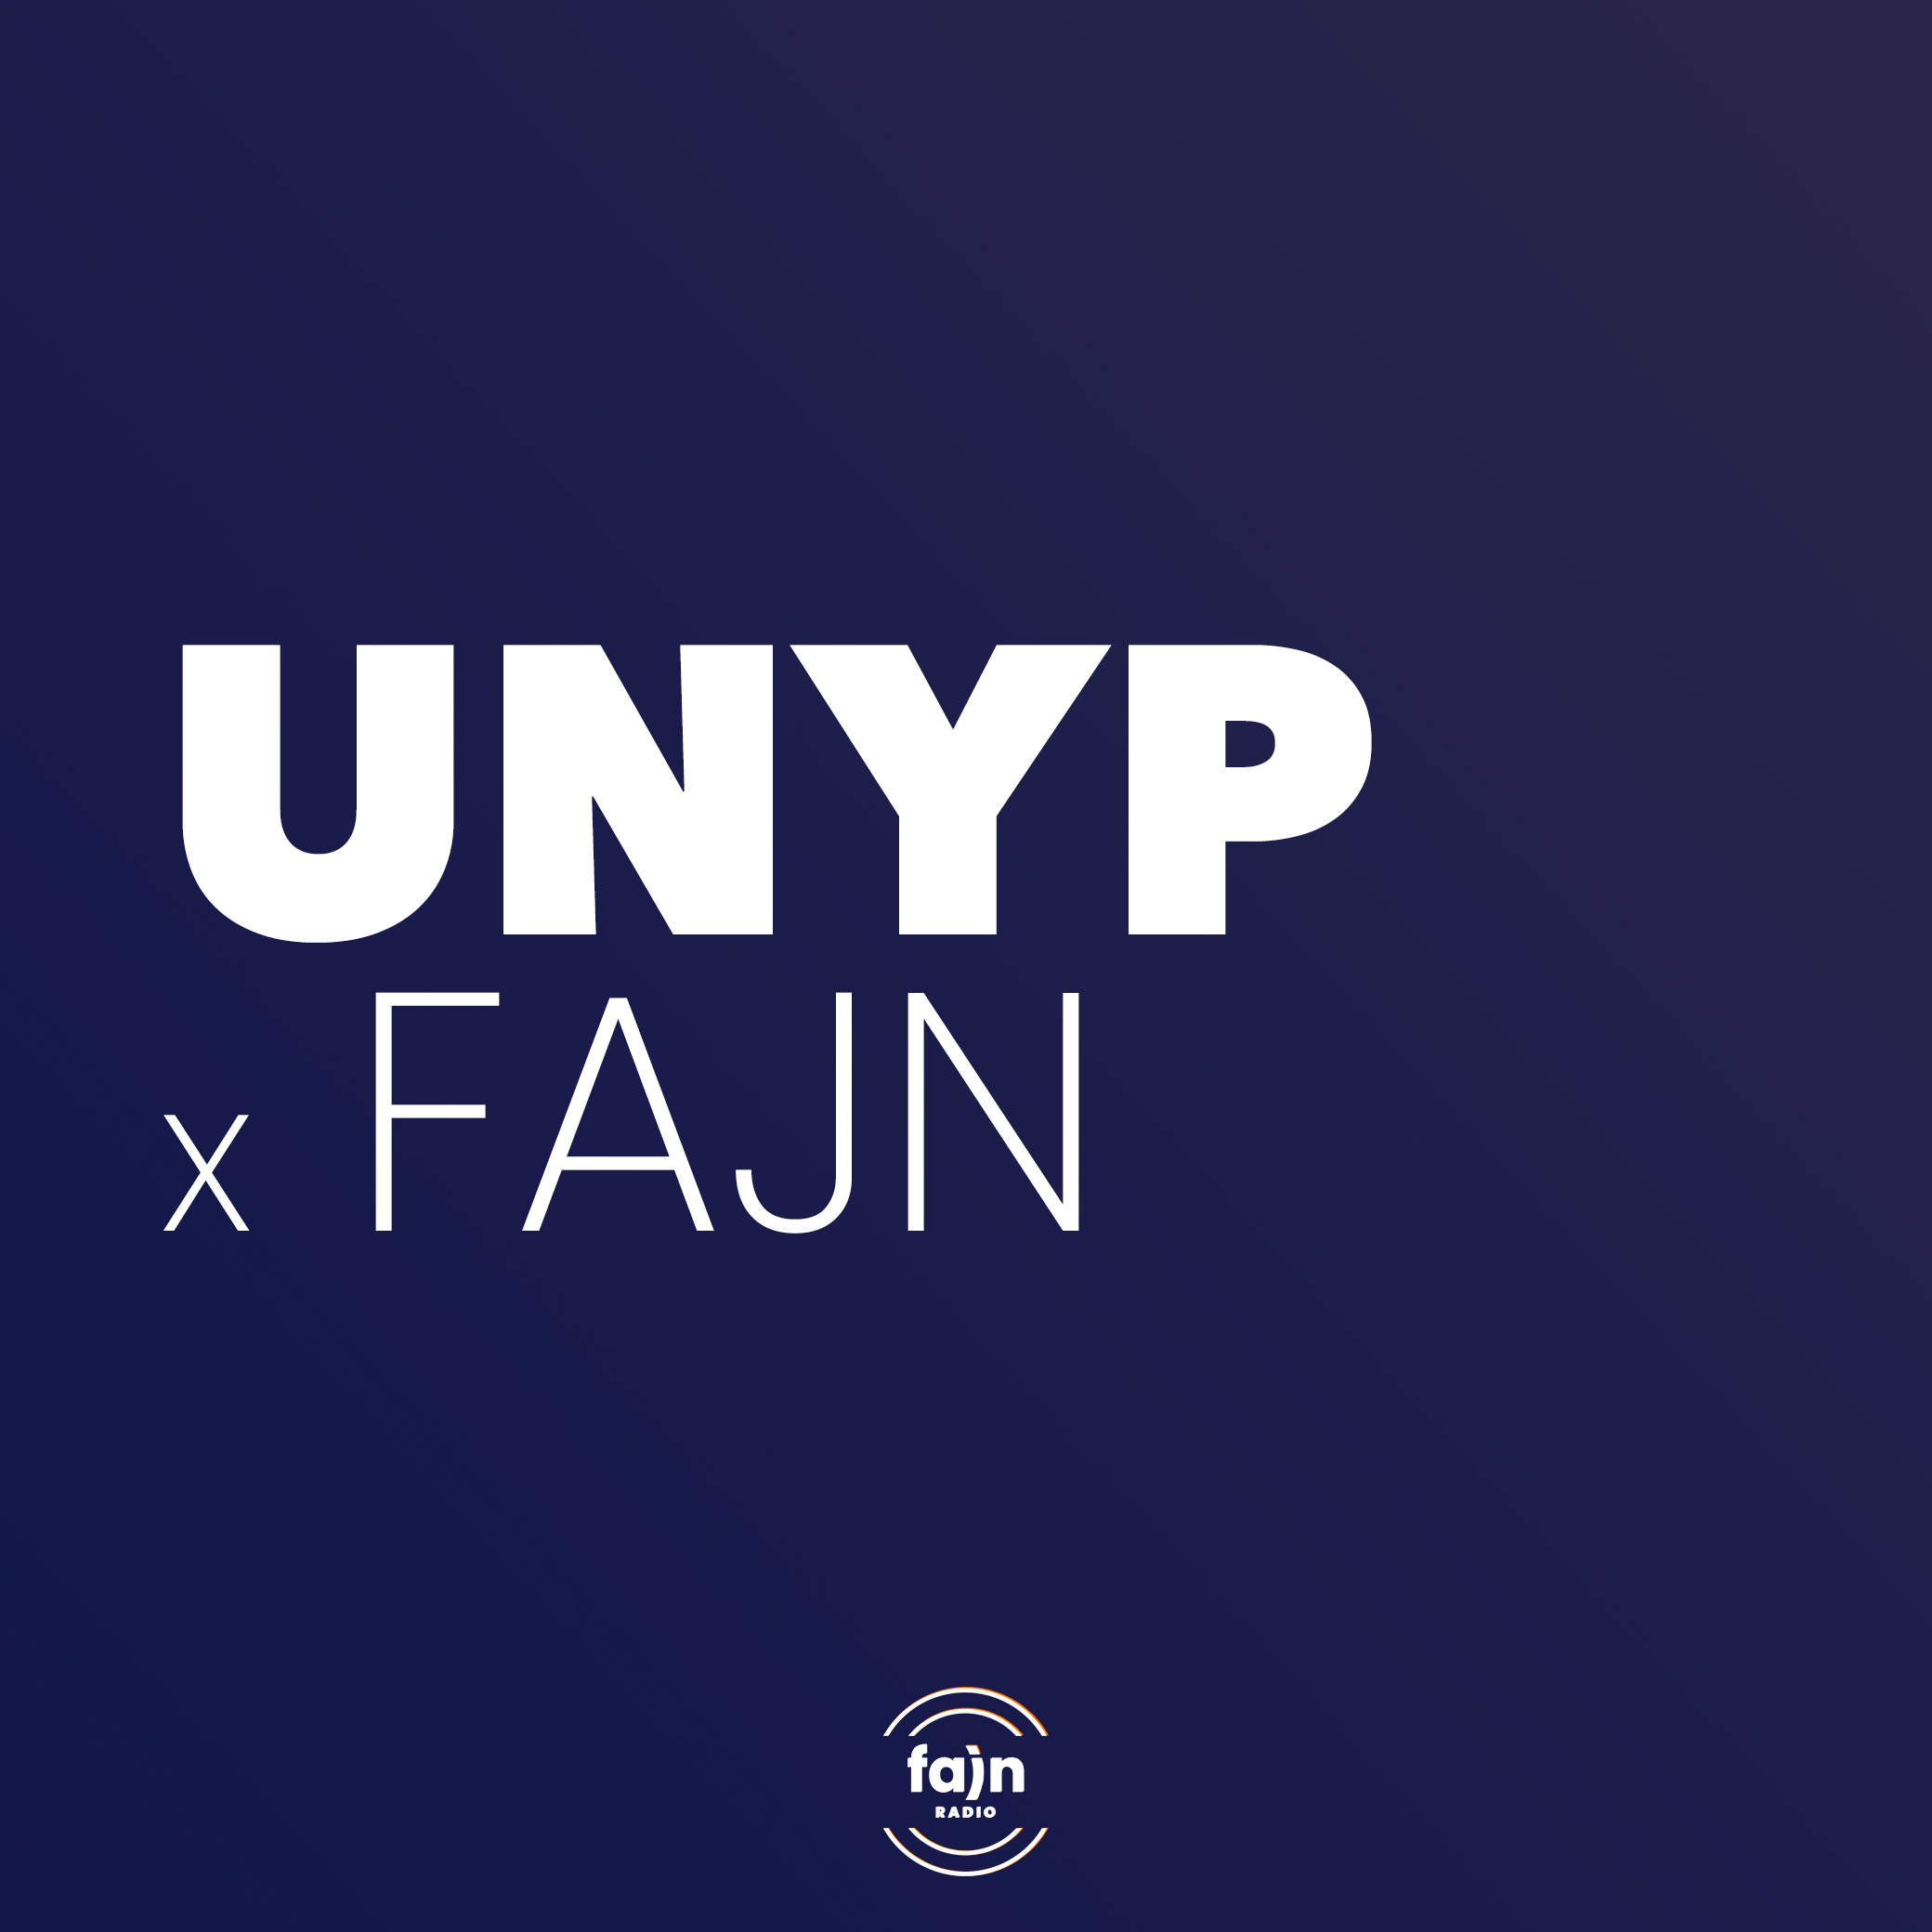 UNYP x Fajn (Dan Žlebek & Kateřina Neumannová)